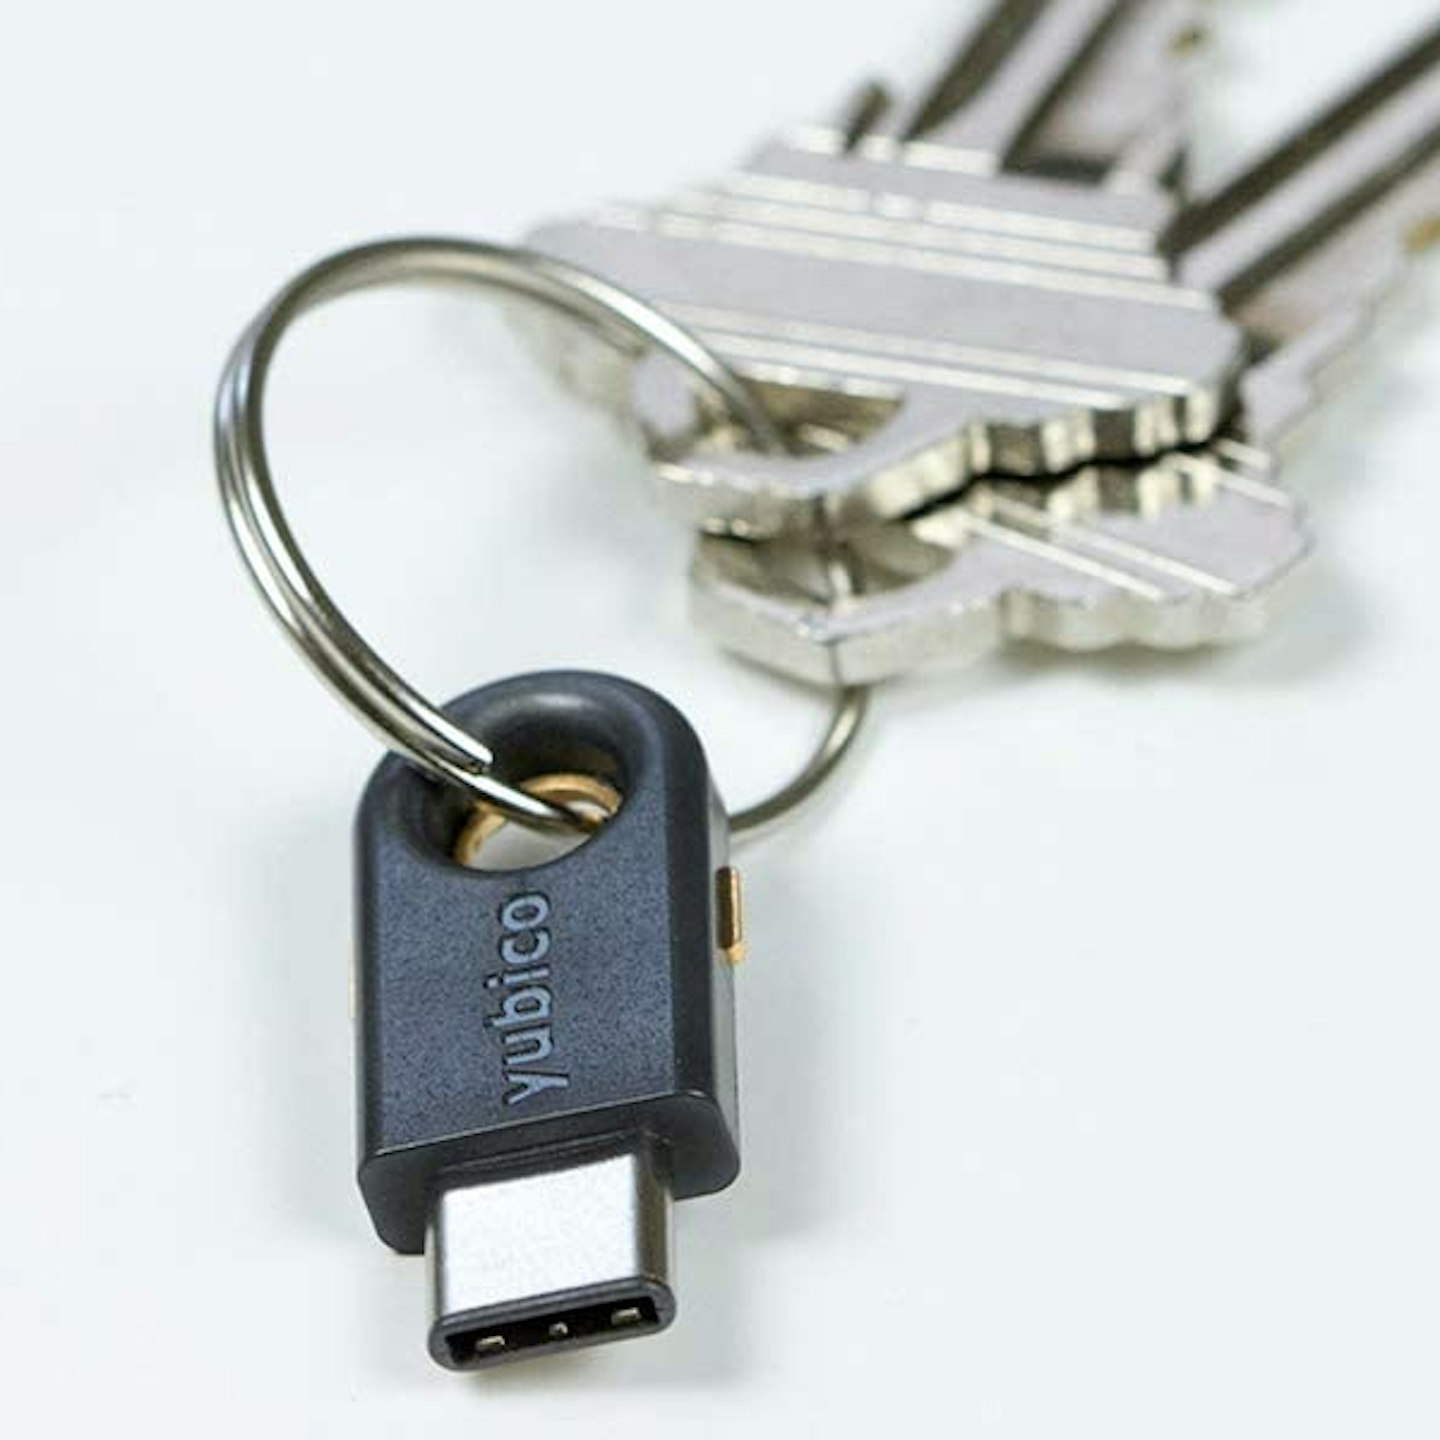 YubiKey 5C USB-C Security Key